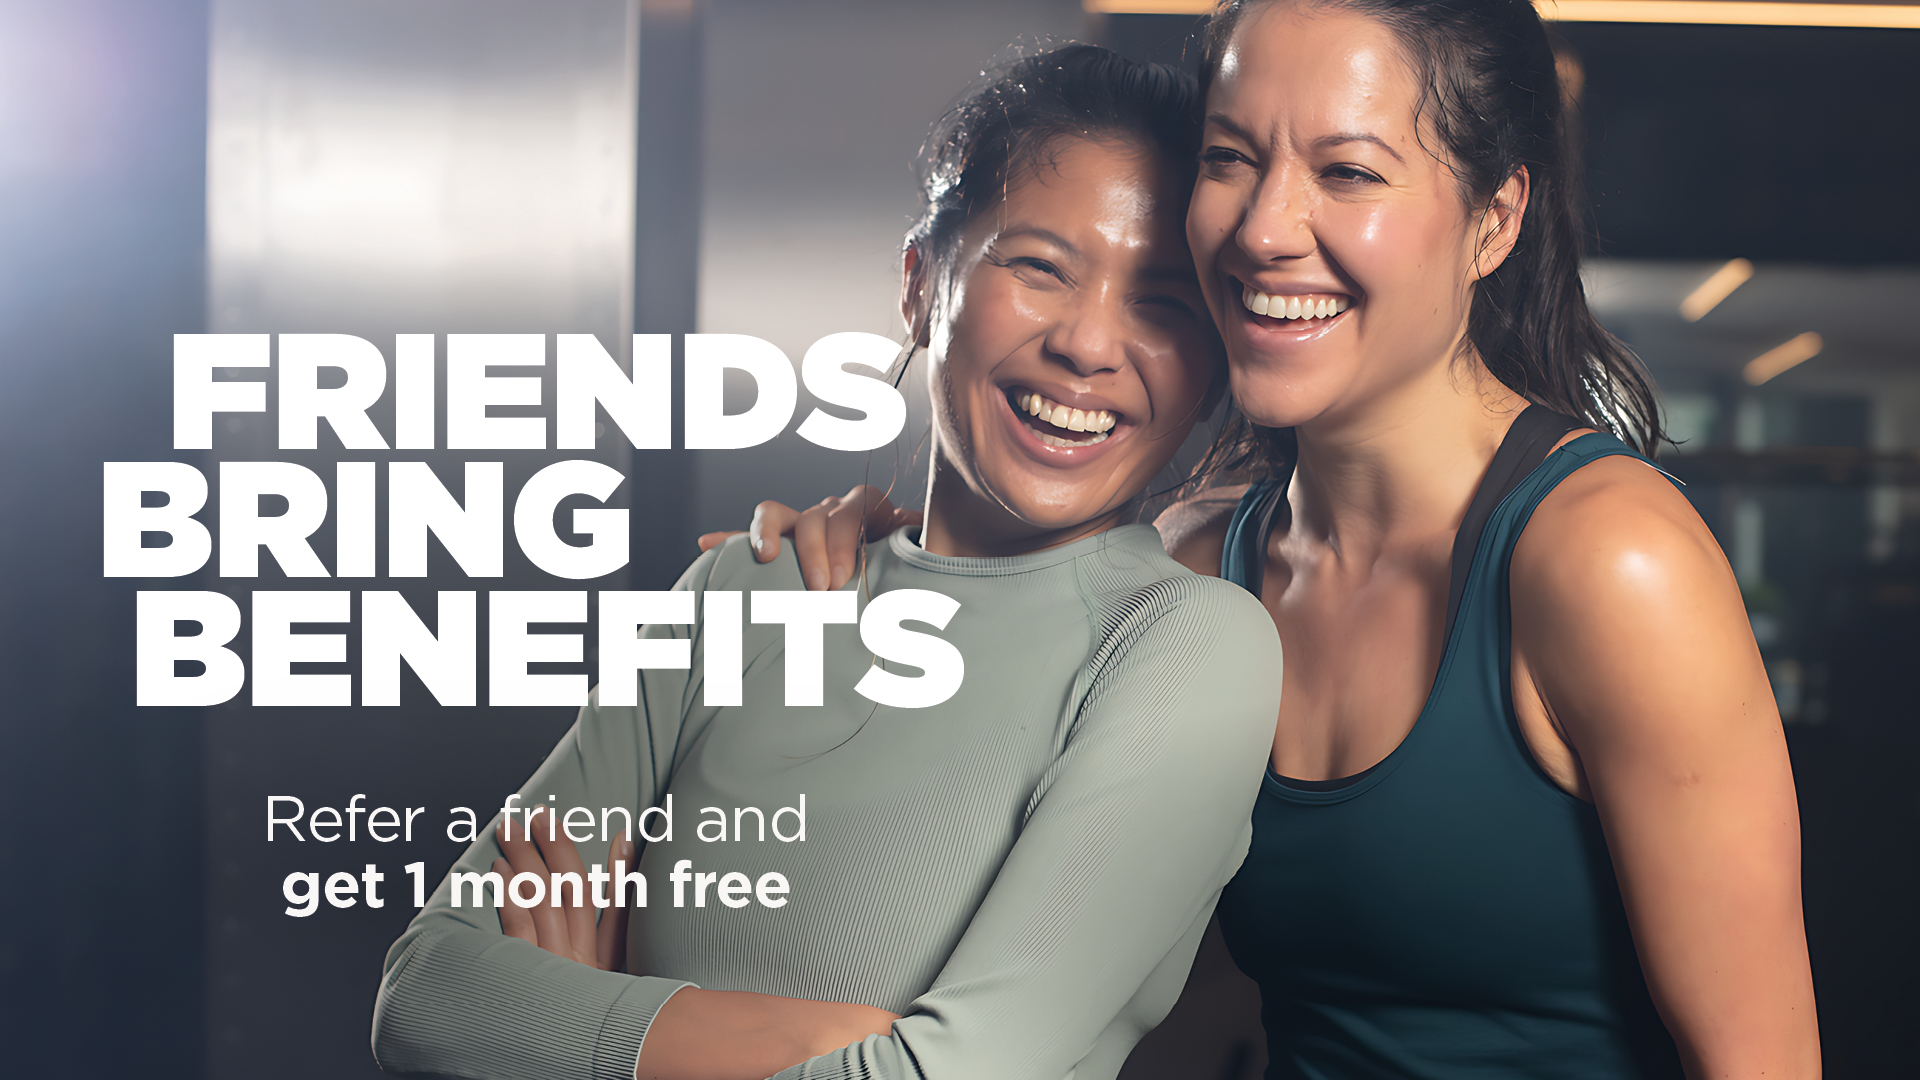 Friends bring benefits